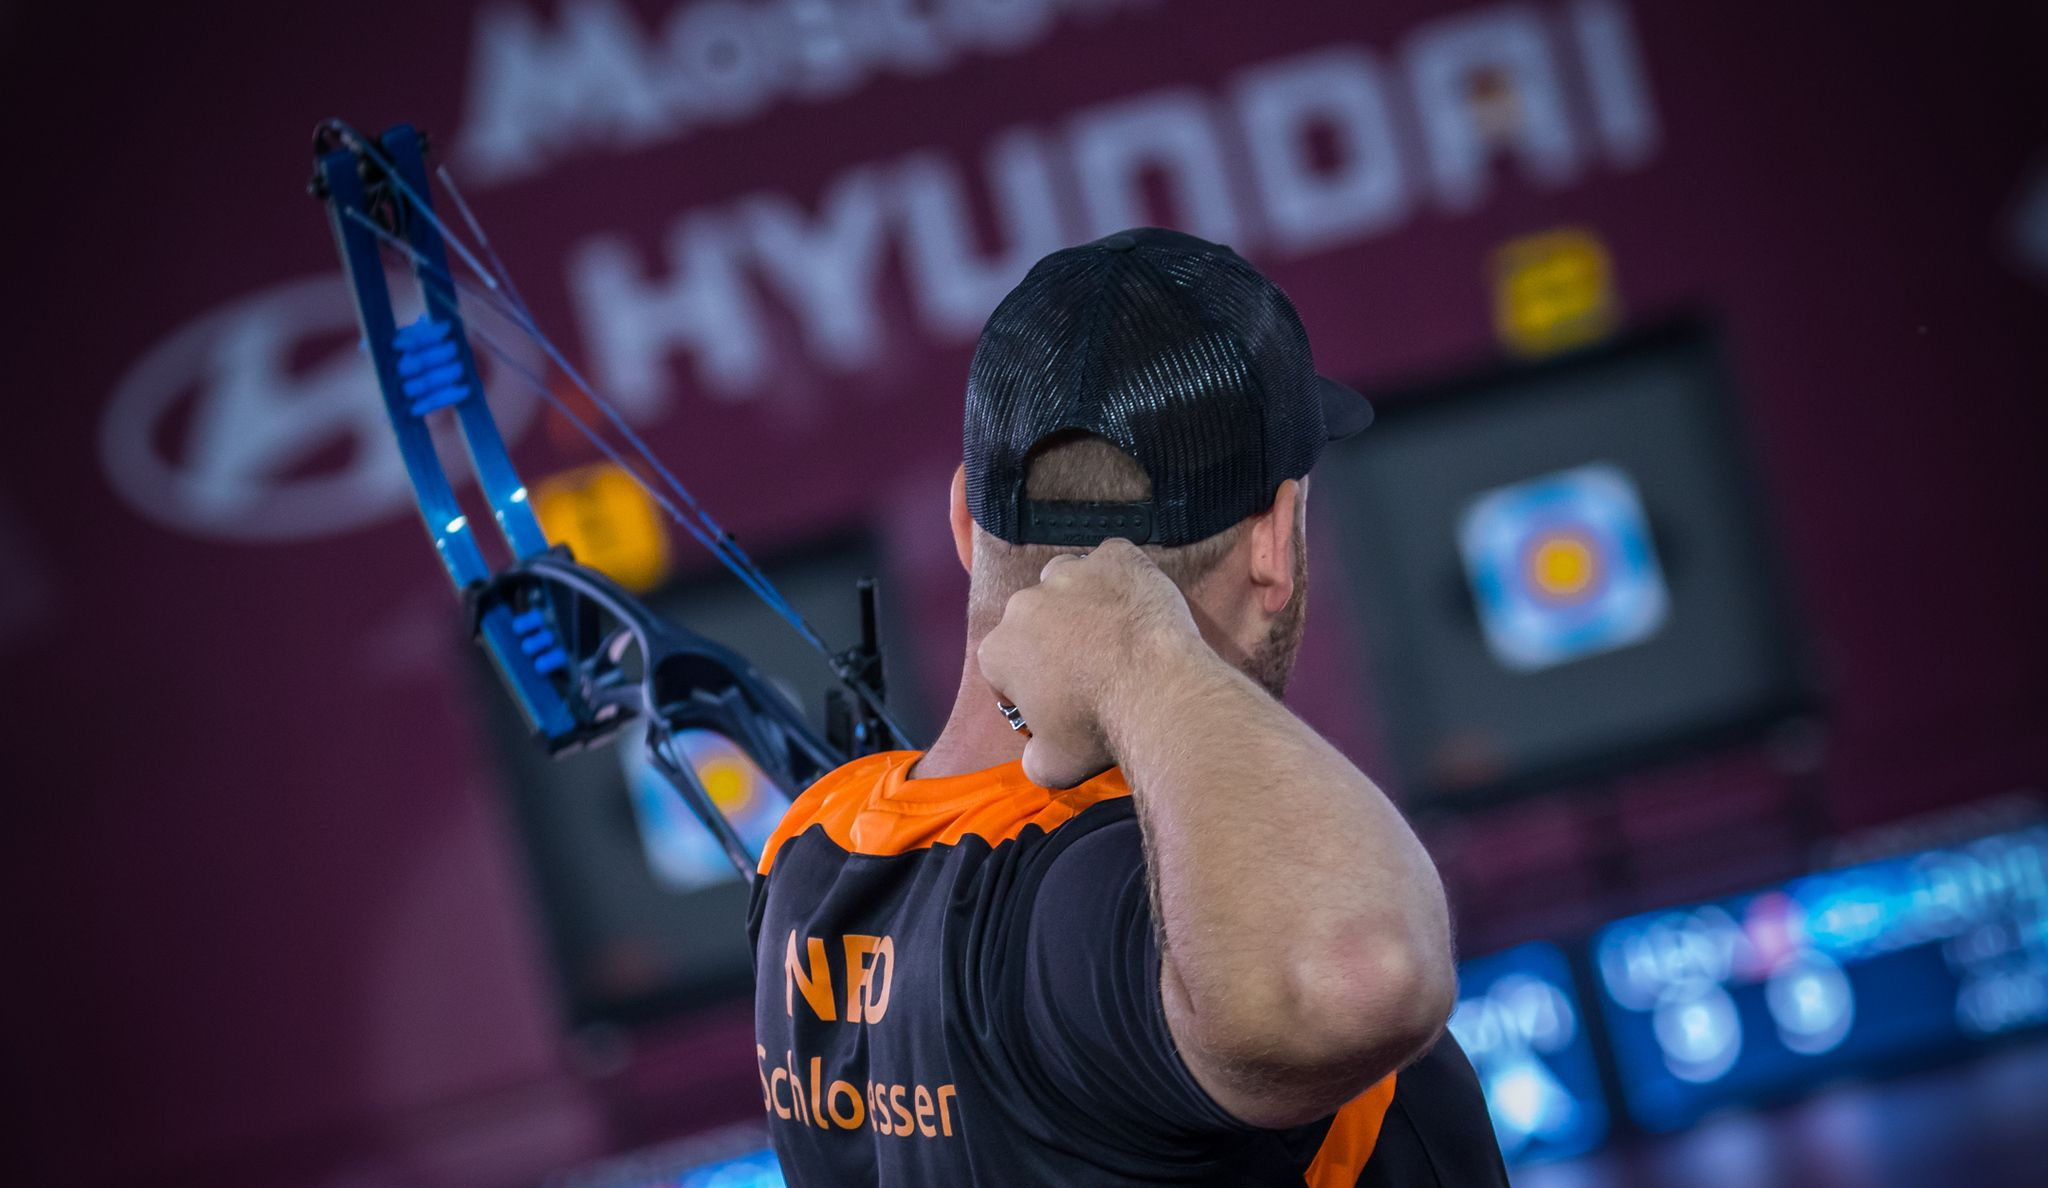 Mike Schloesser won the men's compound title ©World Archery